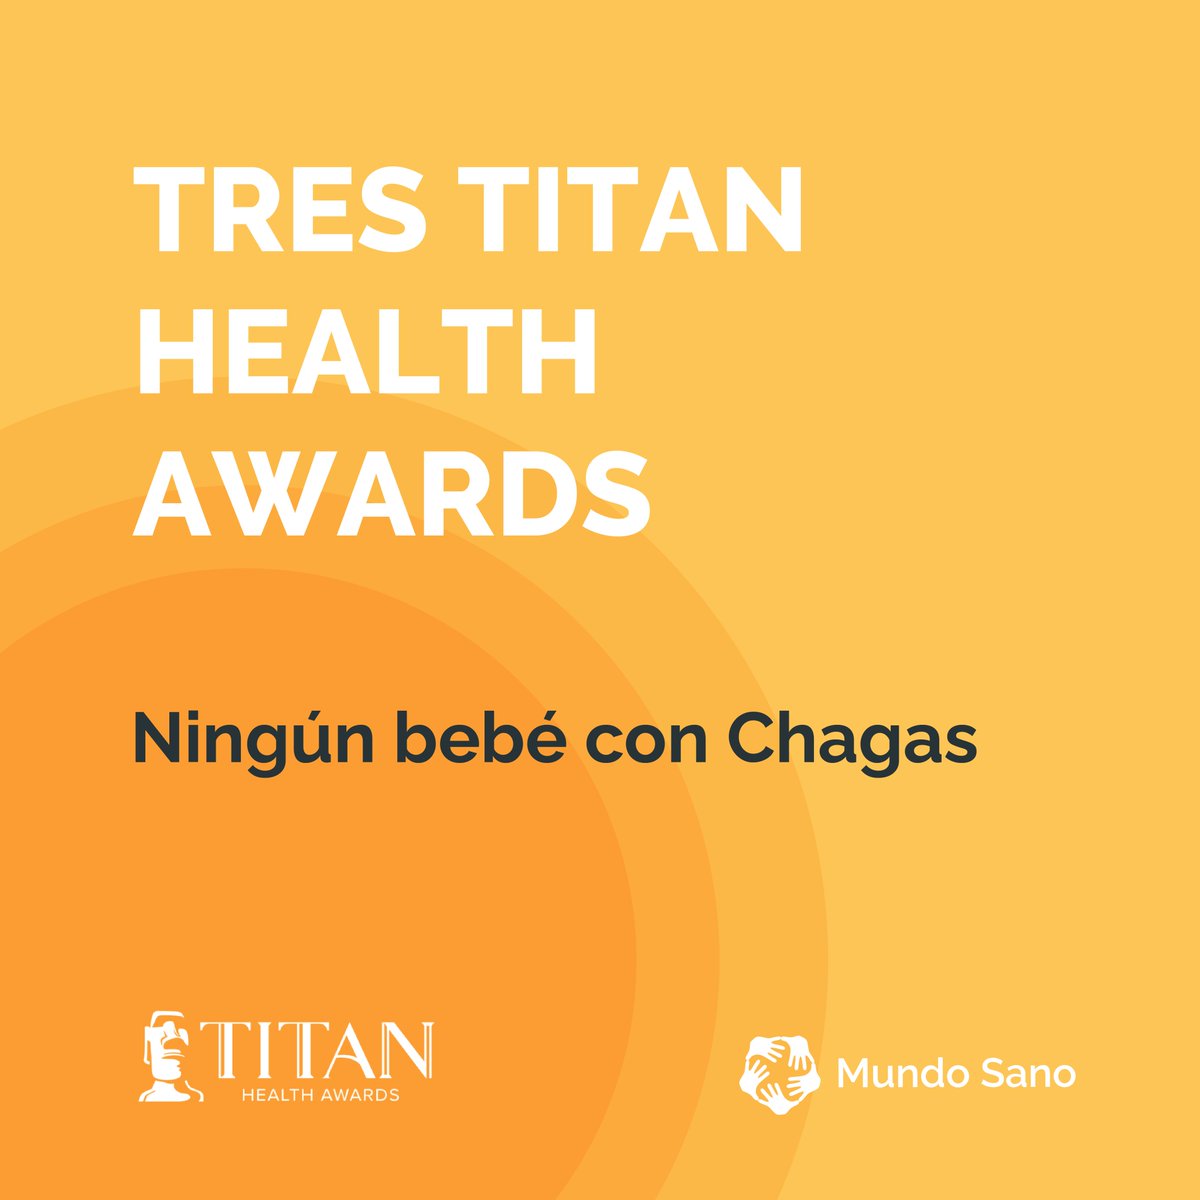 Nuestra campaña #NingúnBebéConChagas fue distinguida con tres @TitanAwards:

🏆Reconocida en la categoría “Ganador del año”.
🏆Premio Platinium en la categoría “Programa estratégico - Campaña de salud”.
🏆Premio Platinium en la categoría “Contenido de marca - Mamá y Bebé”.